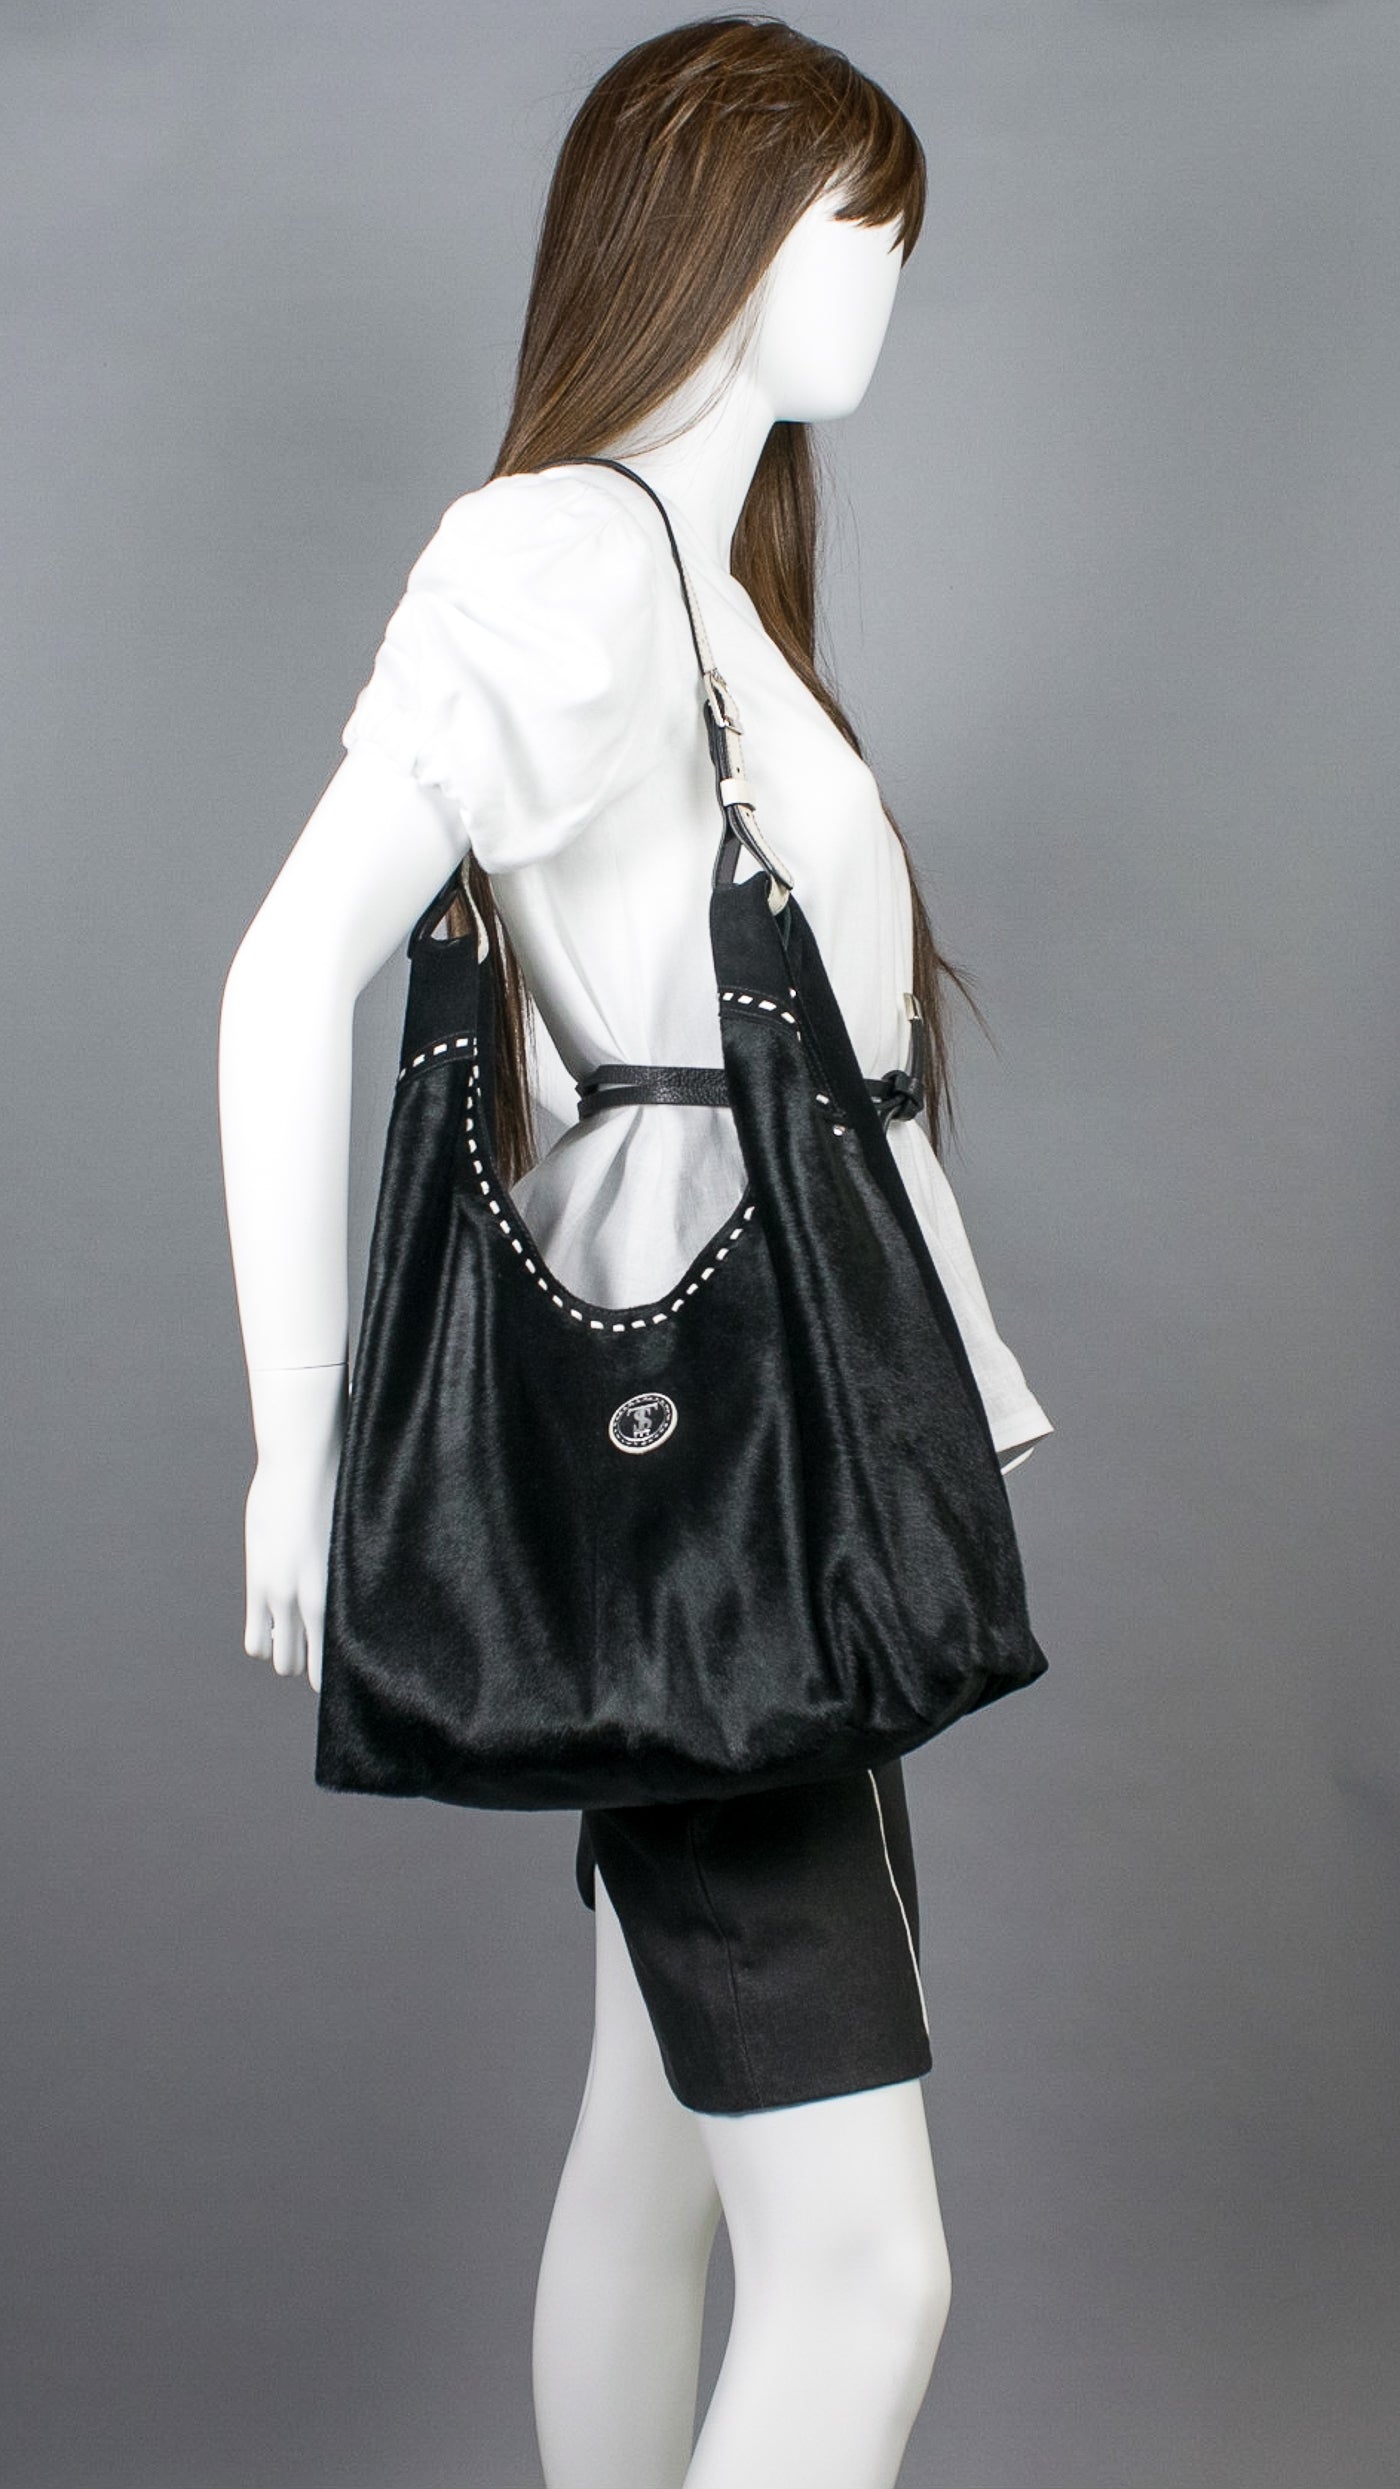 Women Handbags Large Designer Ladies Hobo Bag at Rs 1512/piece | Namakkal |  ID: 25585430530